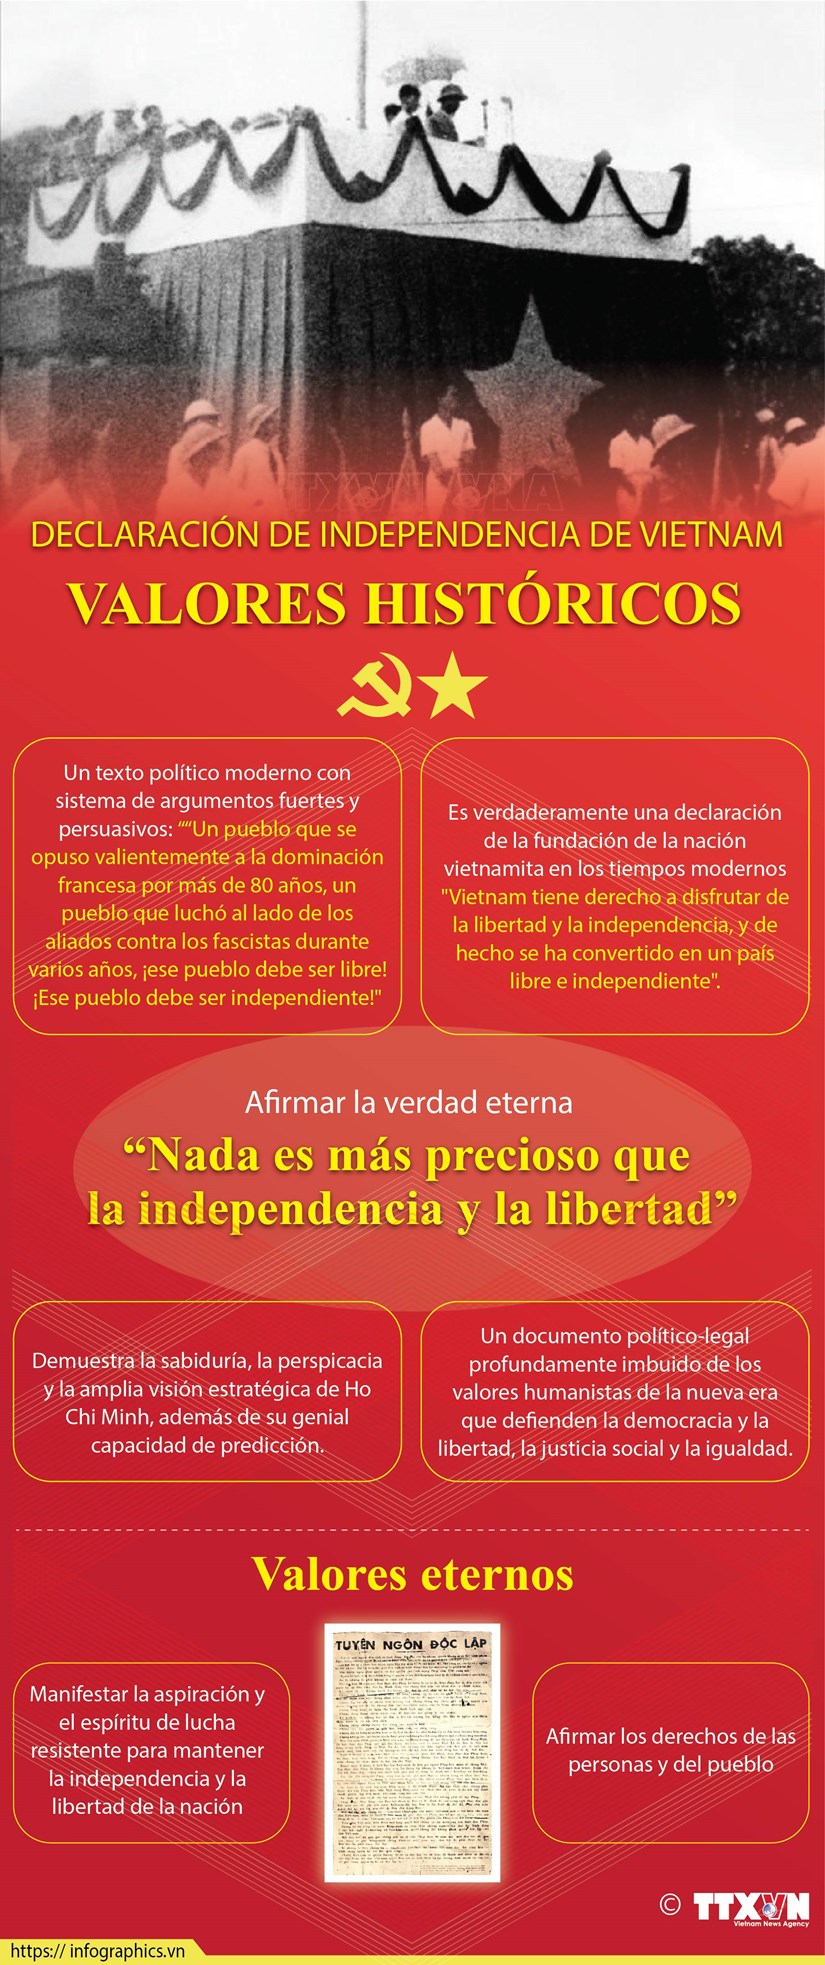 Valores historicos de la Declaracion de Independencia de Vietnam hinh anh 1